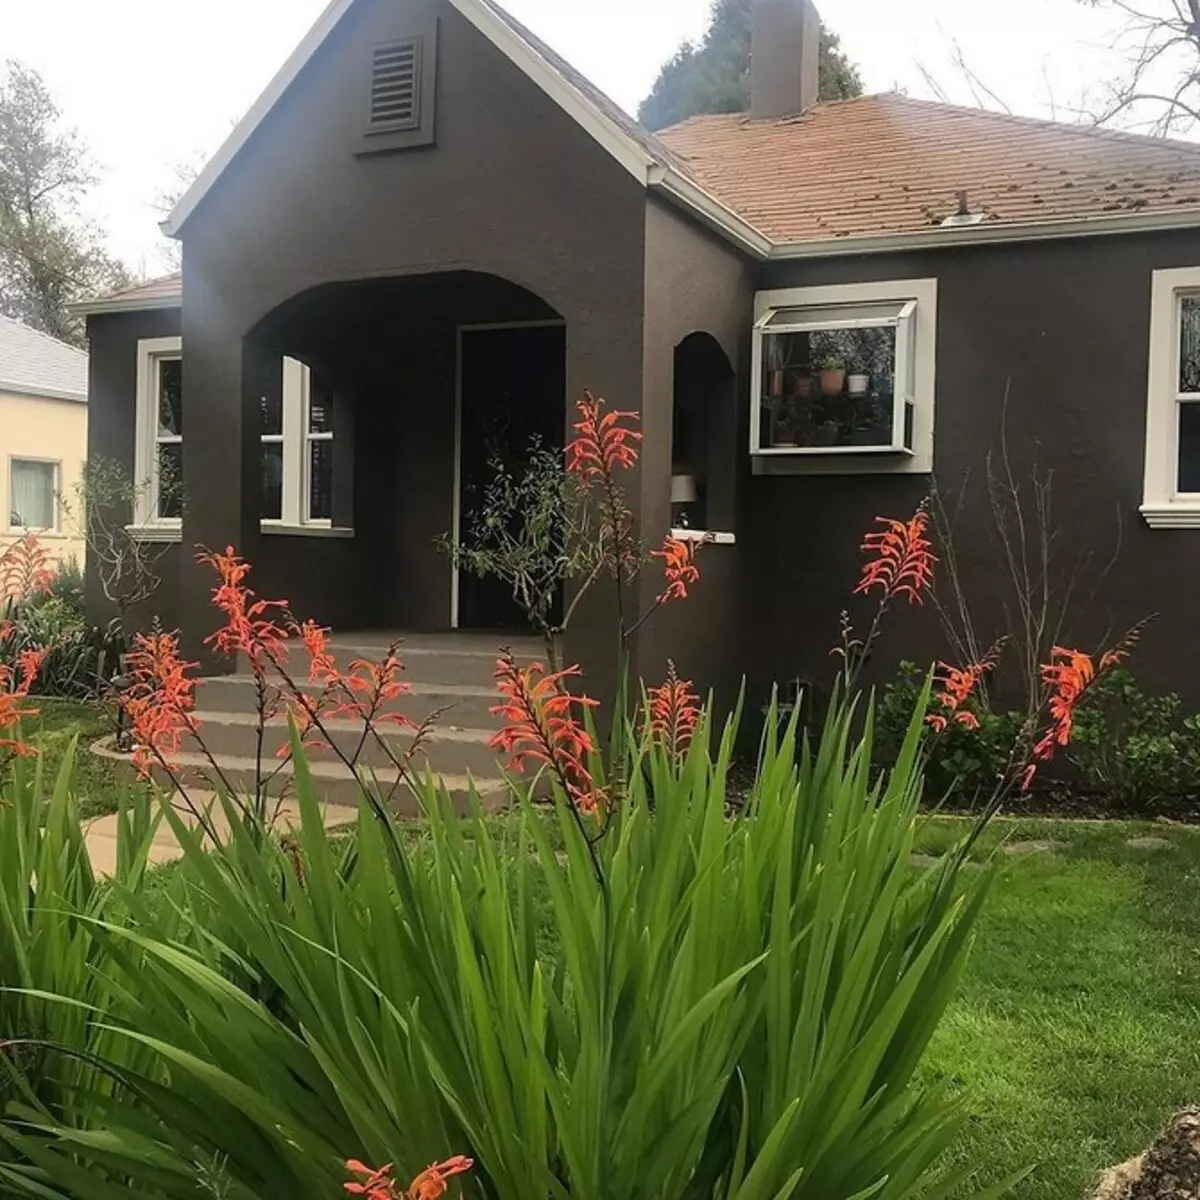 איזה צבע לצייר את הבית בחוץ כדי להיות יפה ומעשית 8311_17